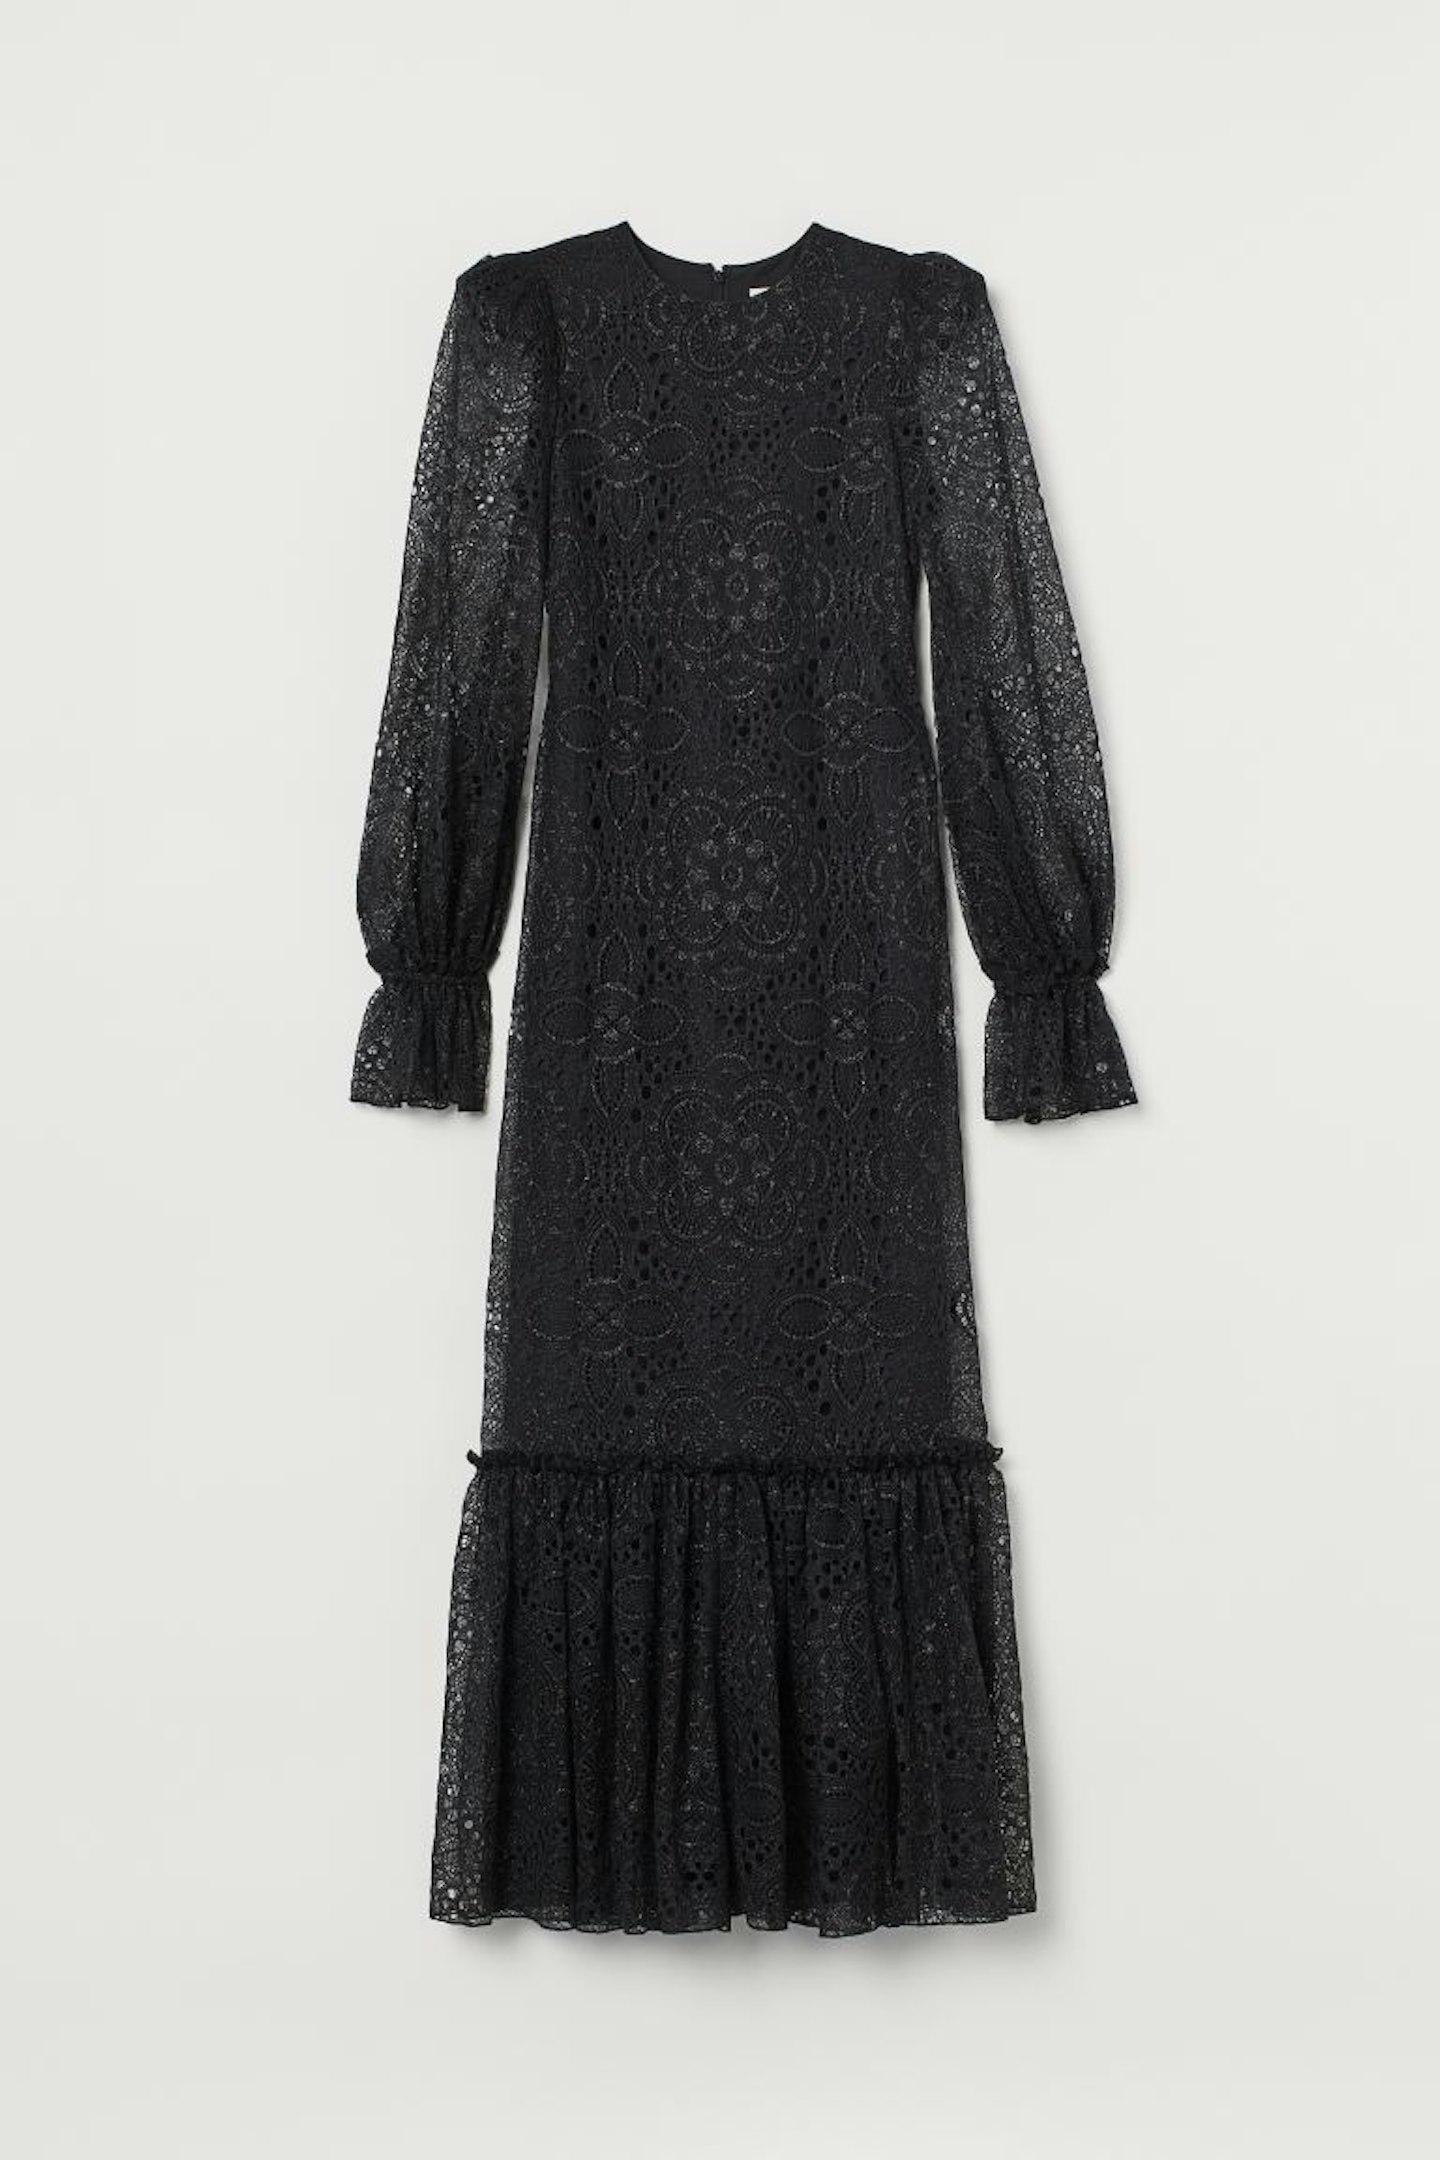 Long Lace Dress, £49.99